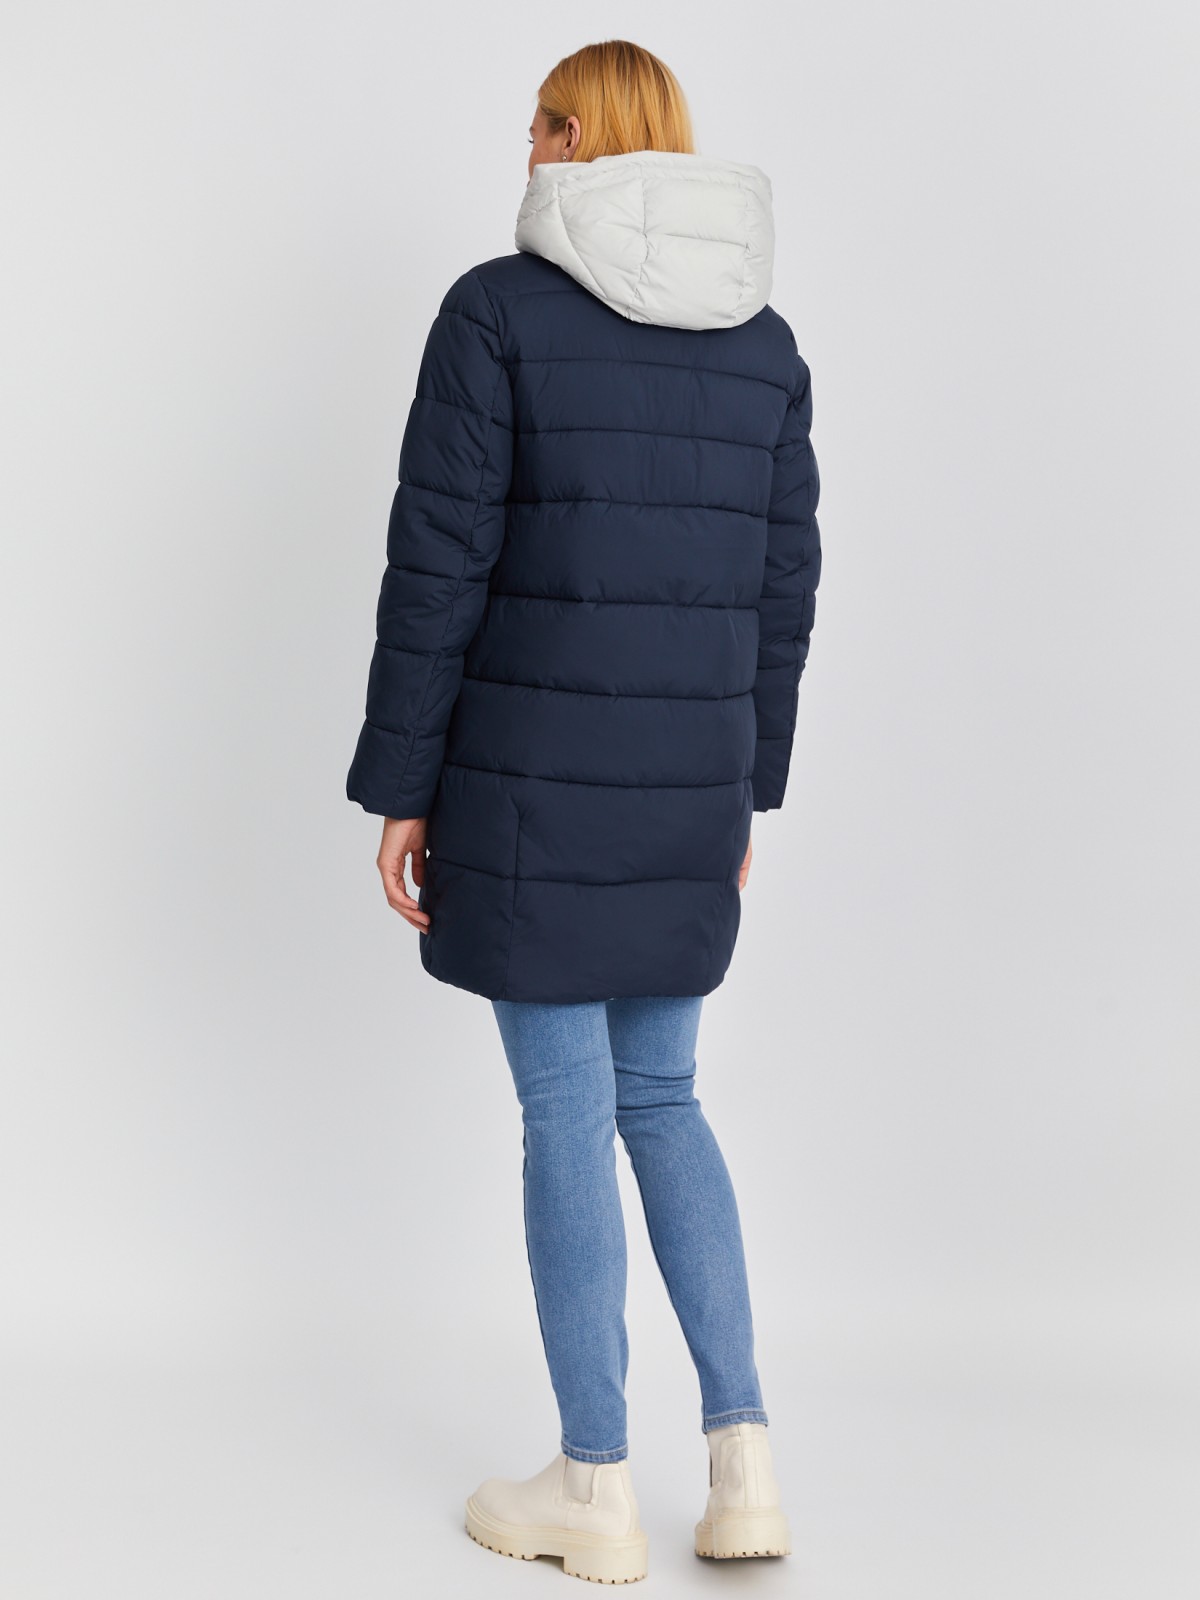 Тёплая стёганая куртка-пальто на молнии с акцентным капюшоном zolla 023345212024, цвет синий, размер S - фото 6